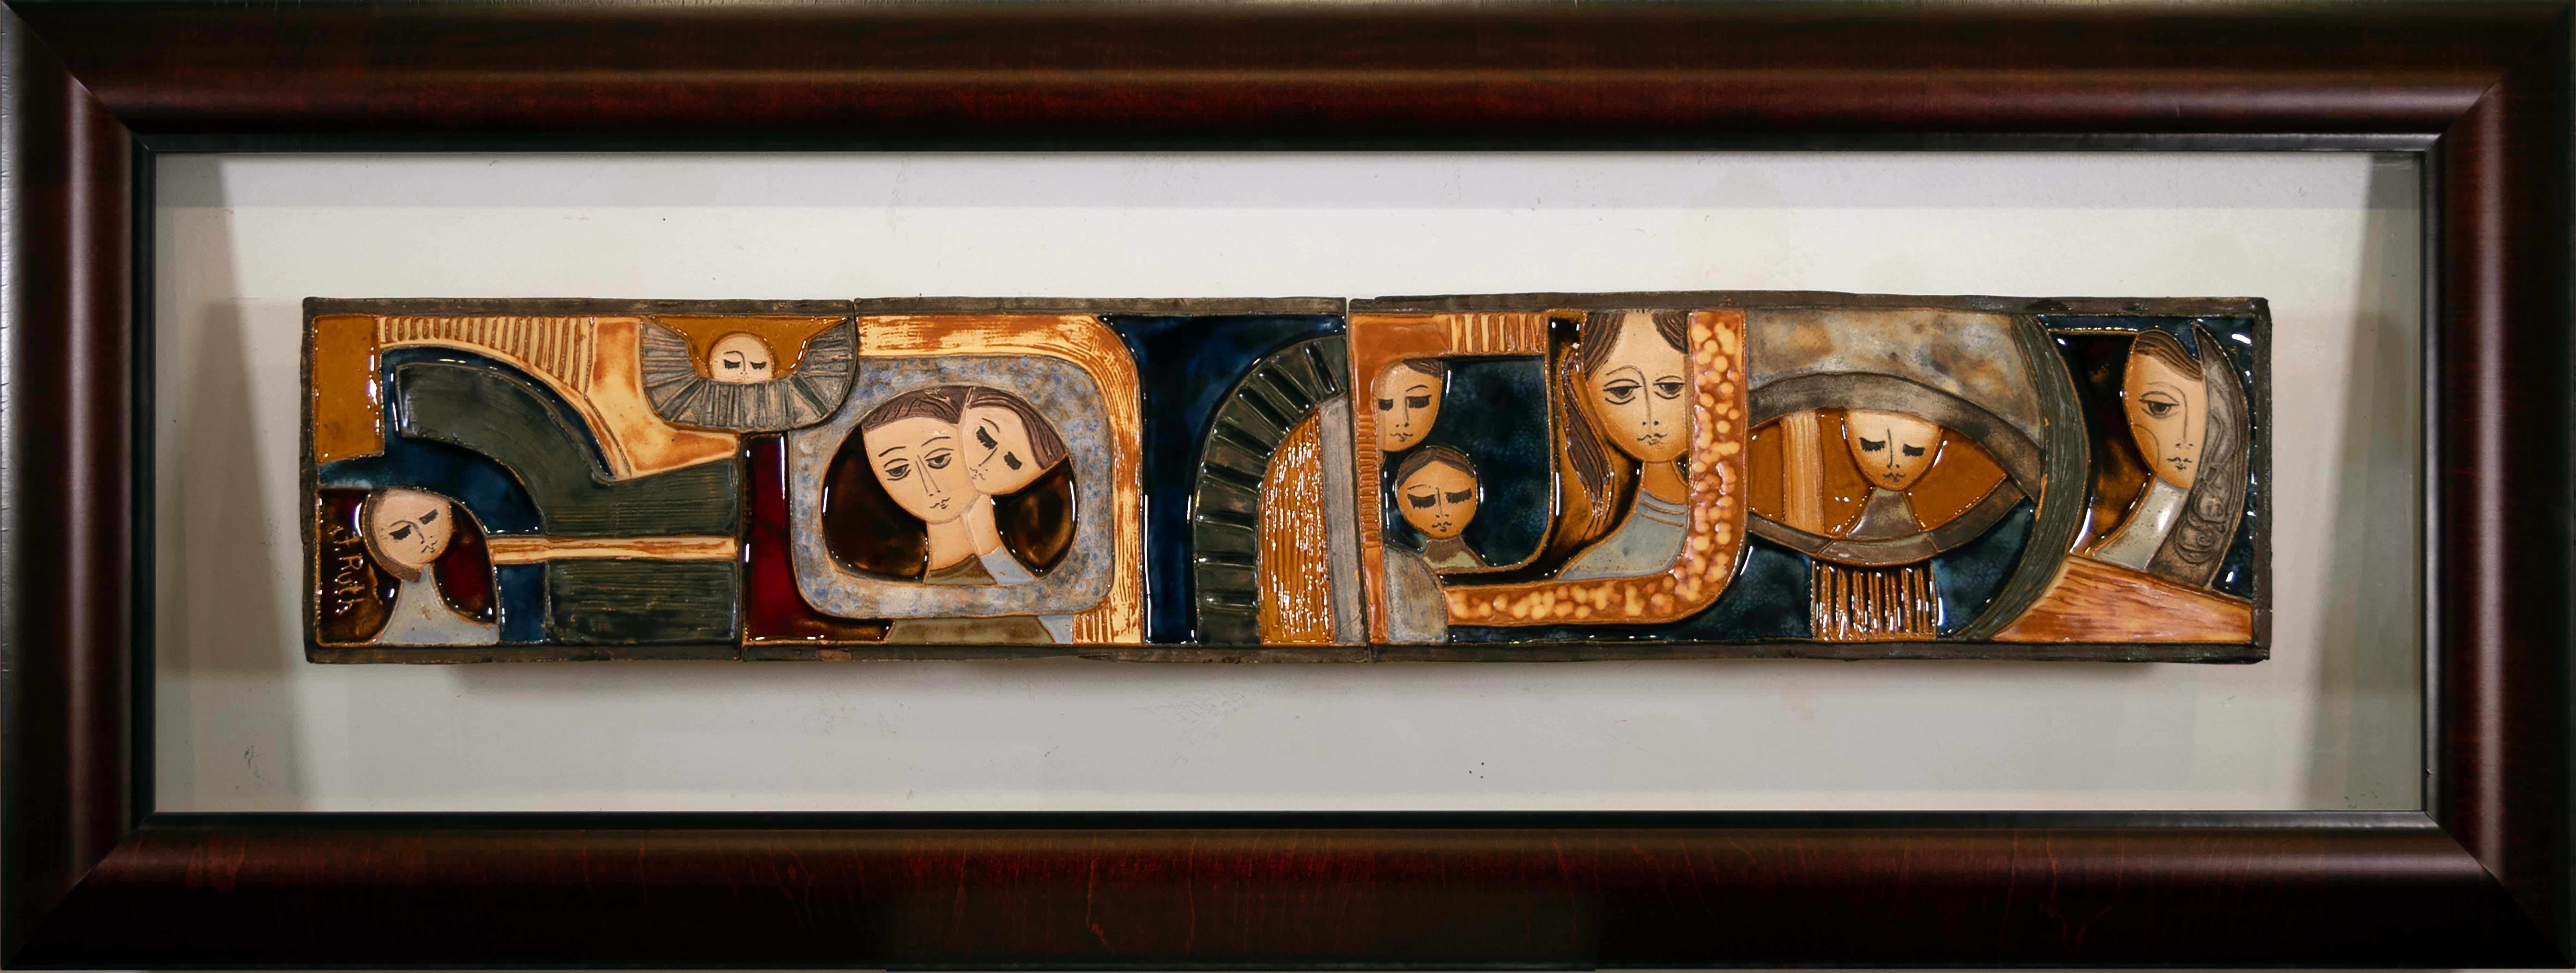 Eine skurrile, modernistische, figurative Keramikfliesen-Wandinstallation der israelischen Künstlerin Ruth Faktor (Faktorowicz). Eine einzigartige Komposition mit dem Thema Freundschaft. Die Kacheln wurden mit den einzigartigen Glasuren des